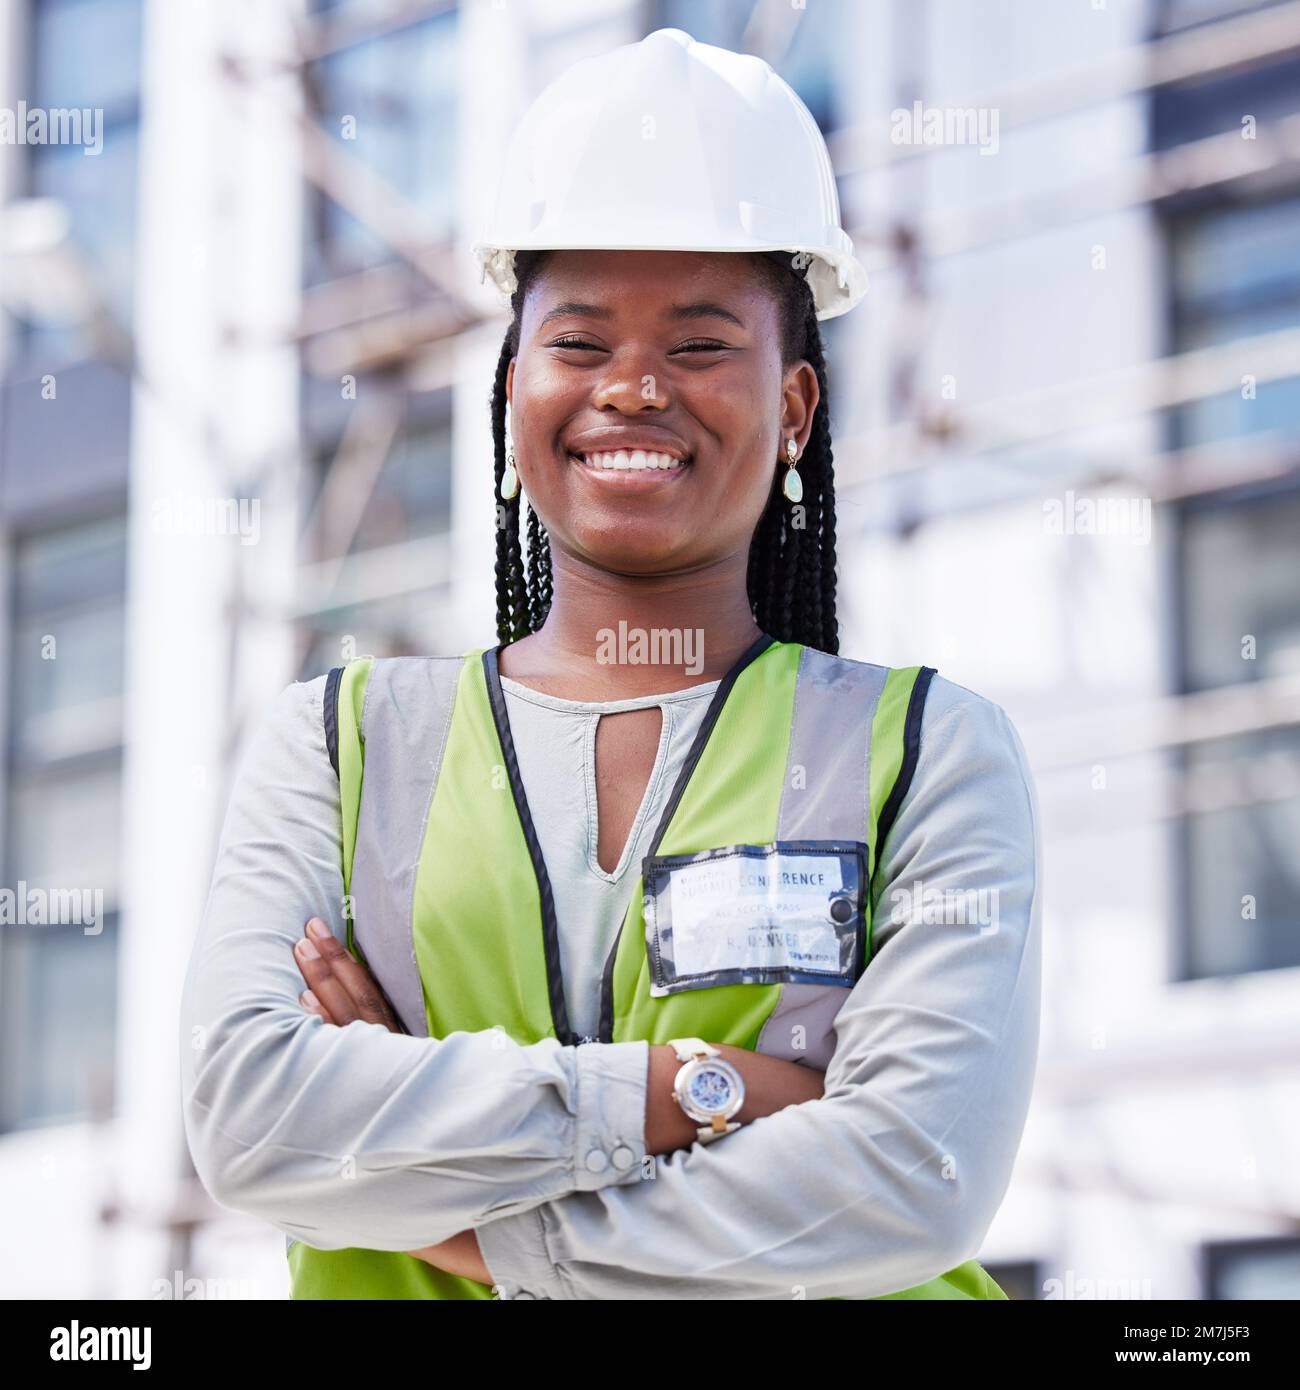 Architettura, project management e ritratto di donna nera in cantiere per ingegneria civile, progettazione e ispezione di edifici. Industriale Foto Stock